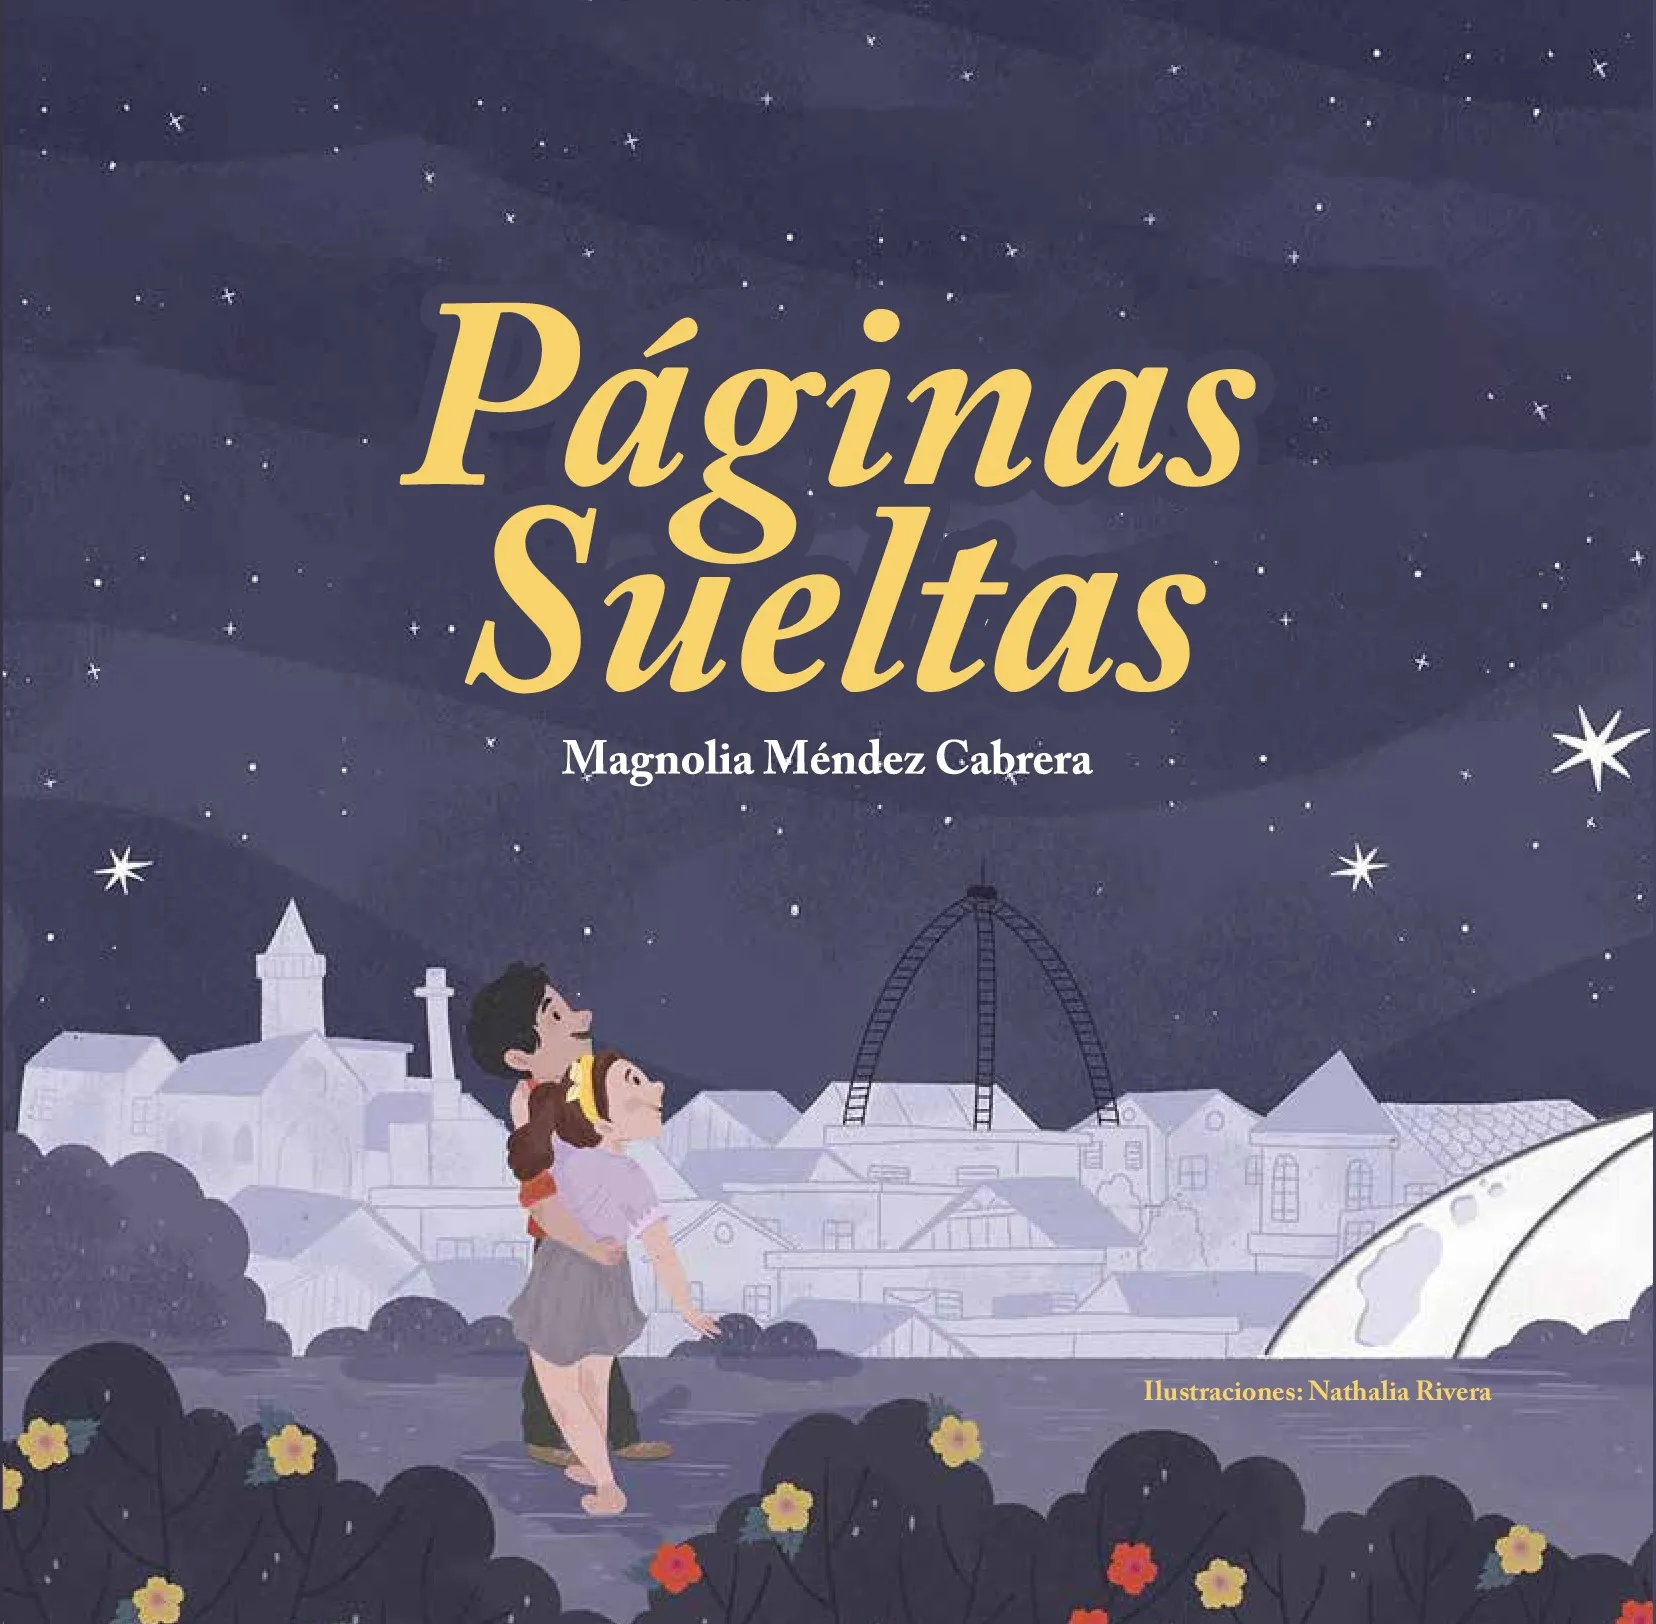 “Páginas Sueltas”, cuentos de Magnolia Méndez, circulará desde este martes